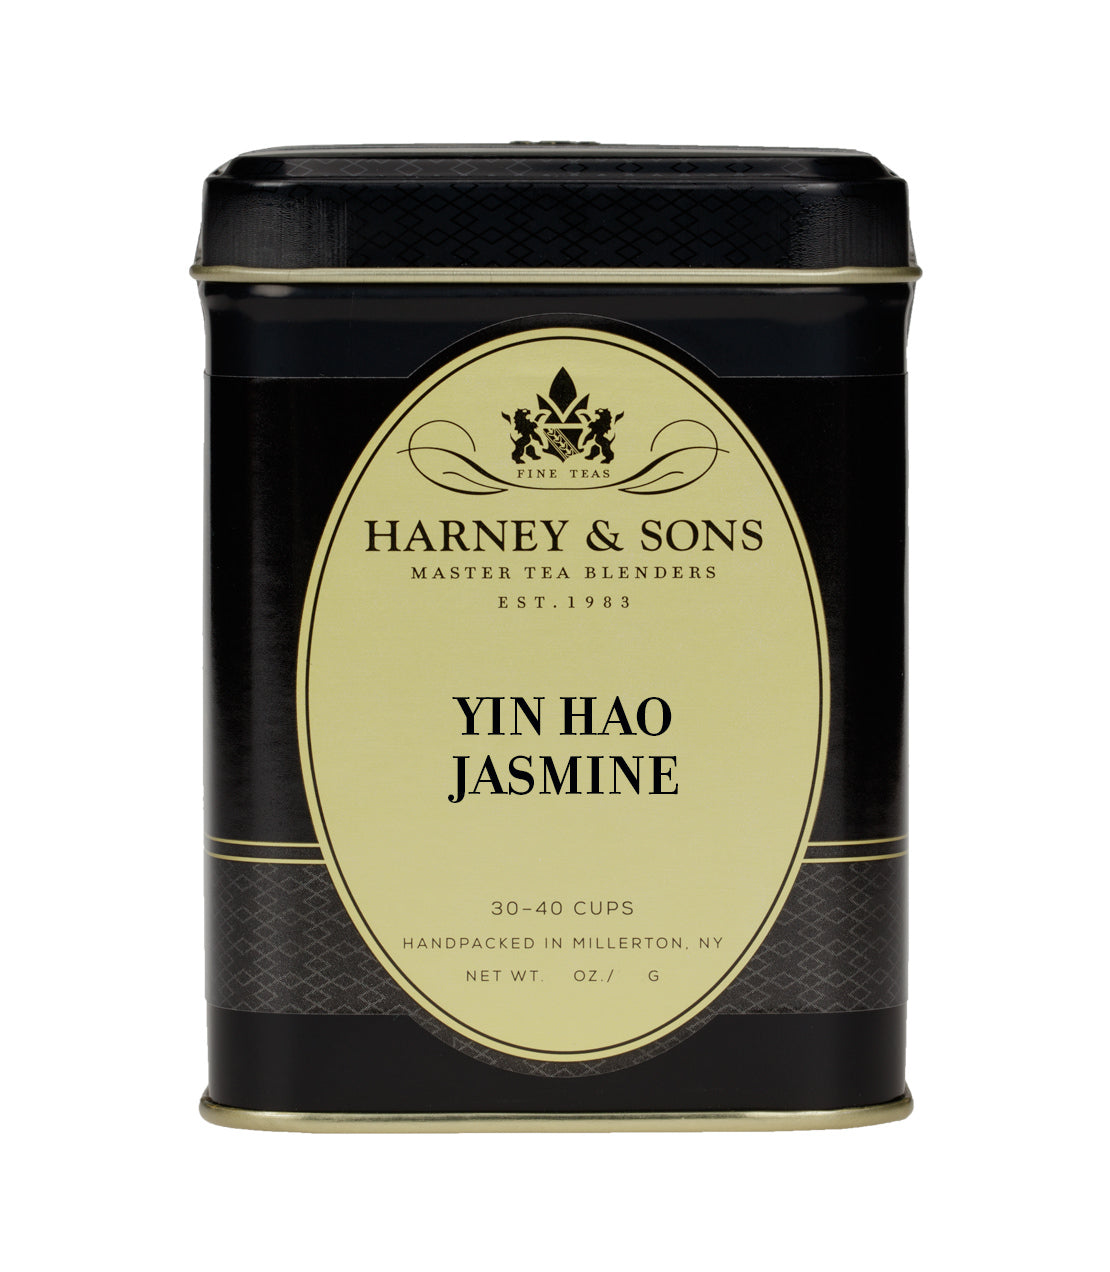 Yin Hao Jasmine - Loose 4 oz. Tin - Harney & Sons Fine Teas